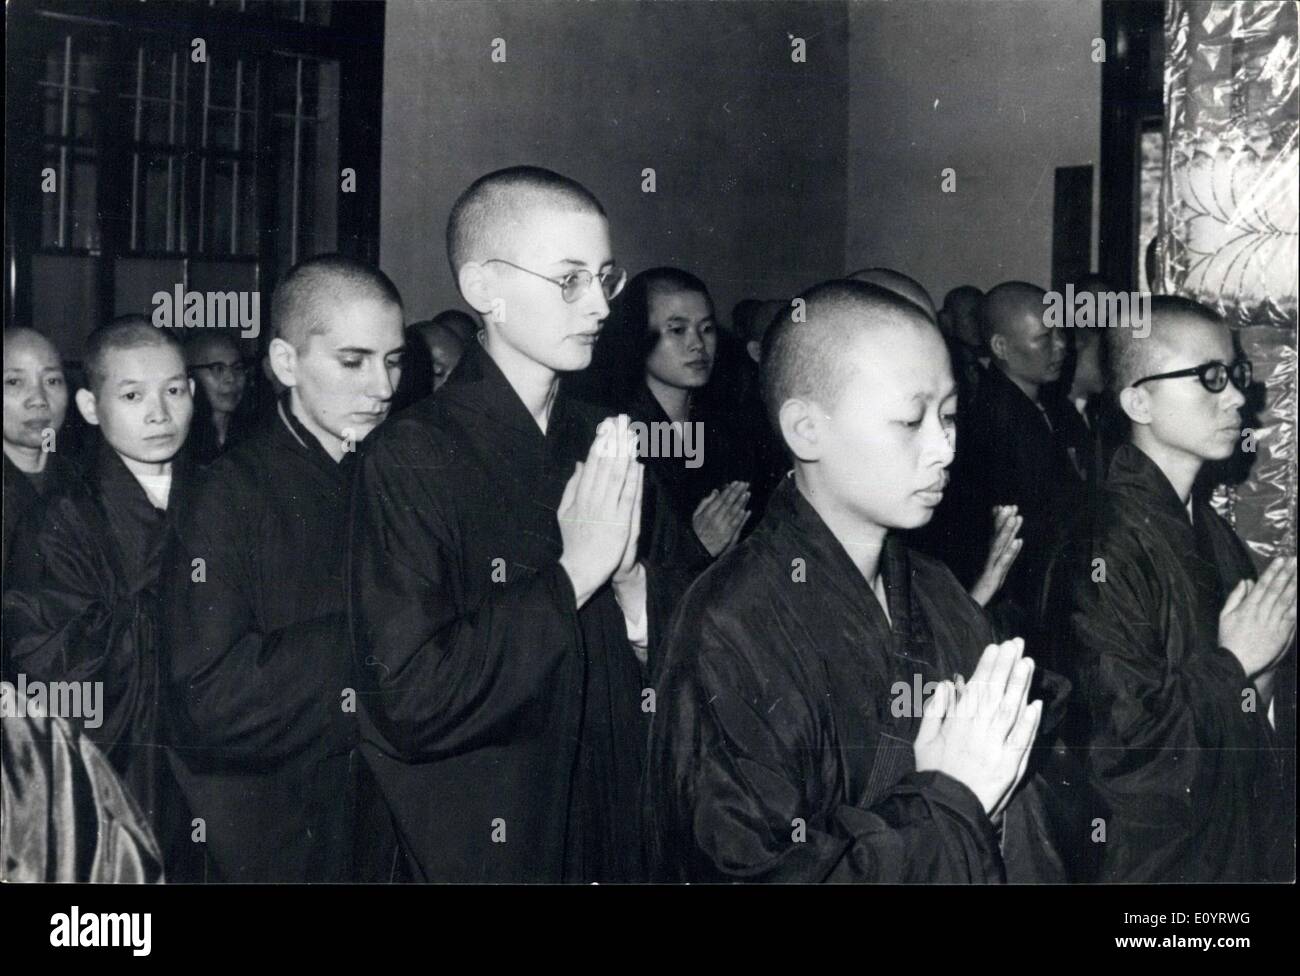 Apr. 27, 1971 - STATI UNITI Le donne diventano monache buddiste: due giovani donne americane diventare monache buddiste dopo aver le loro teste rasate per la cerimonia di iniziazione in un tempio buddista in Taipei, Taiwan, come pregano con un gruppo di religiose cinesi subendo la cerimonia dei voti di seguire gli insegnamenti di Buddha. Il noviates sono il secondo e il terzo da destra in prima linea. Foto Stock